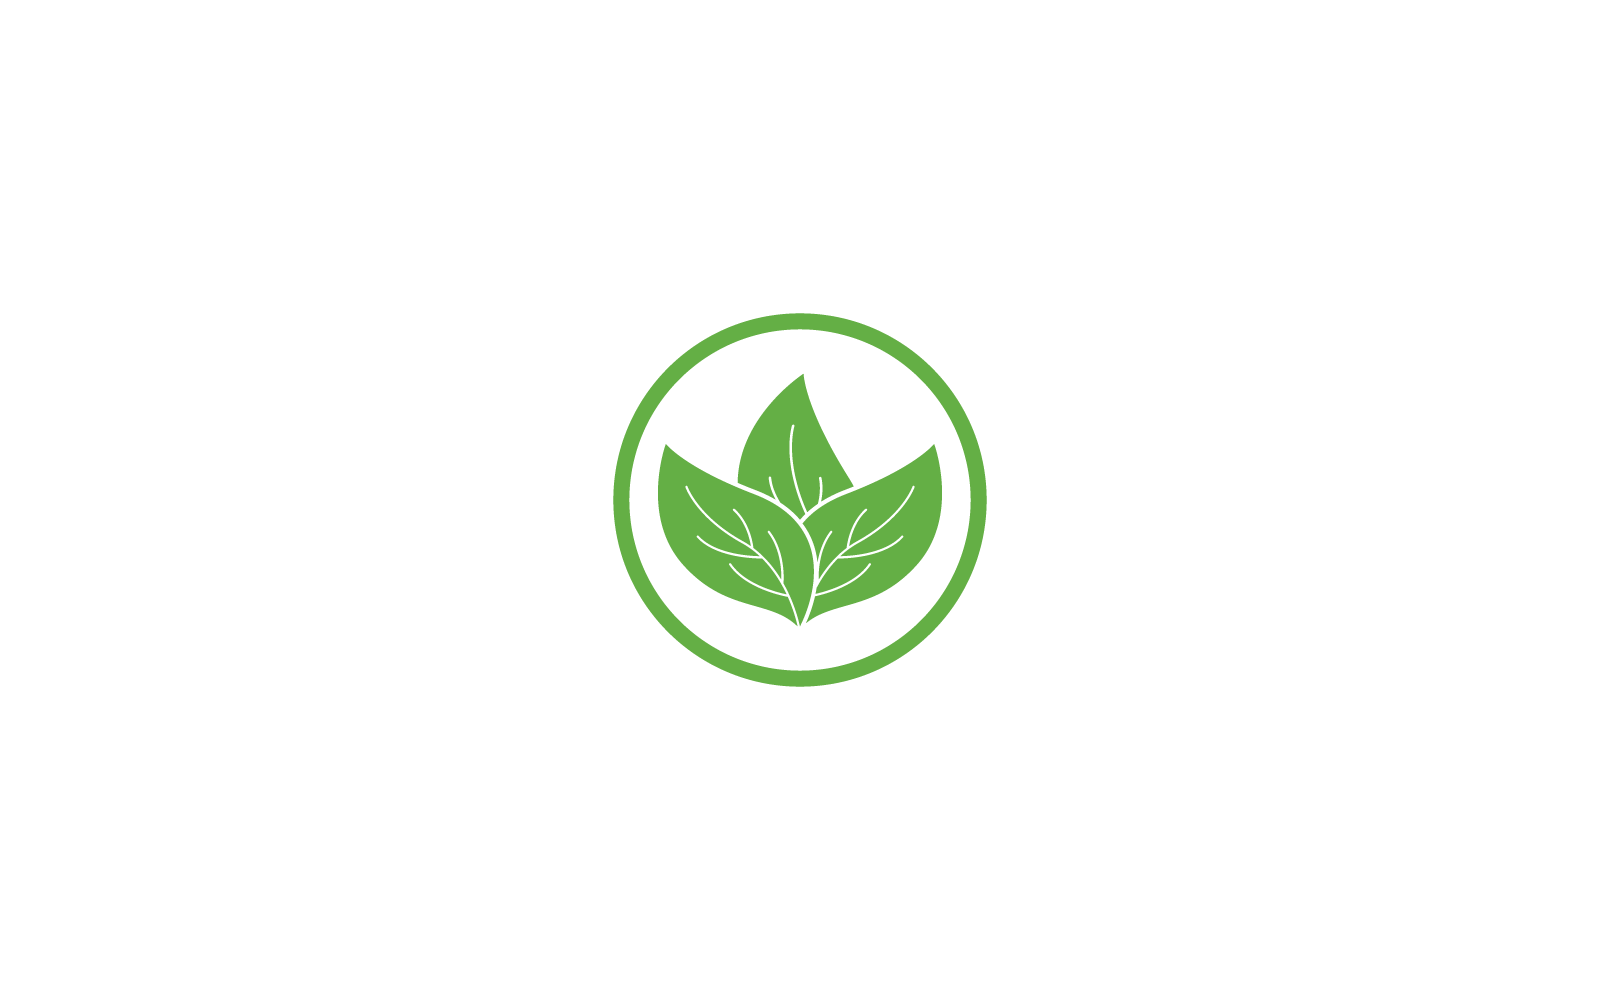 Green leaf logo ecology nature element illustration icon